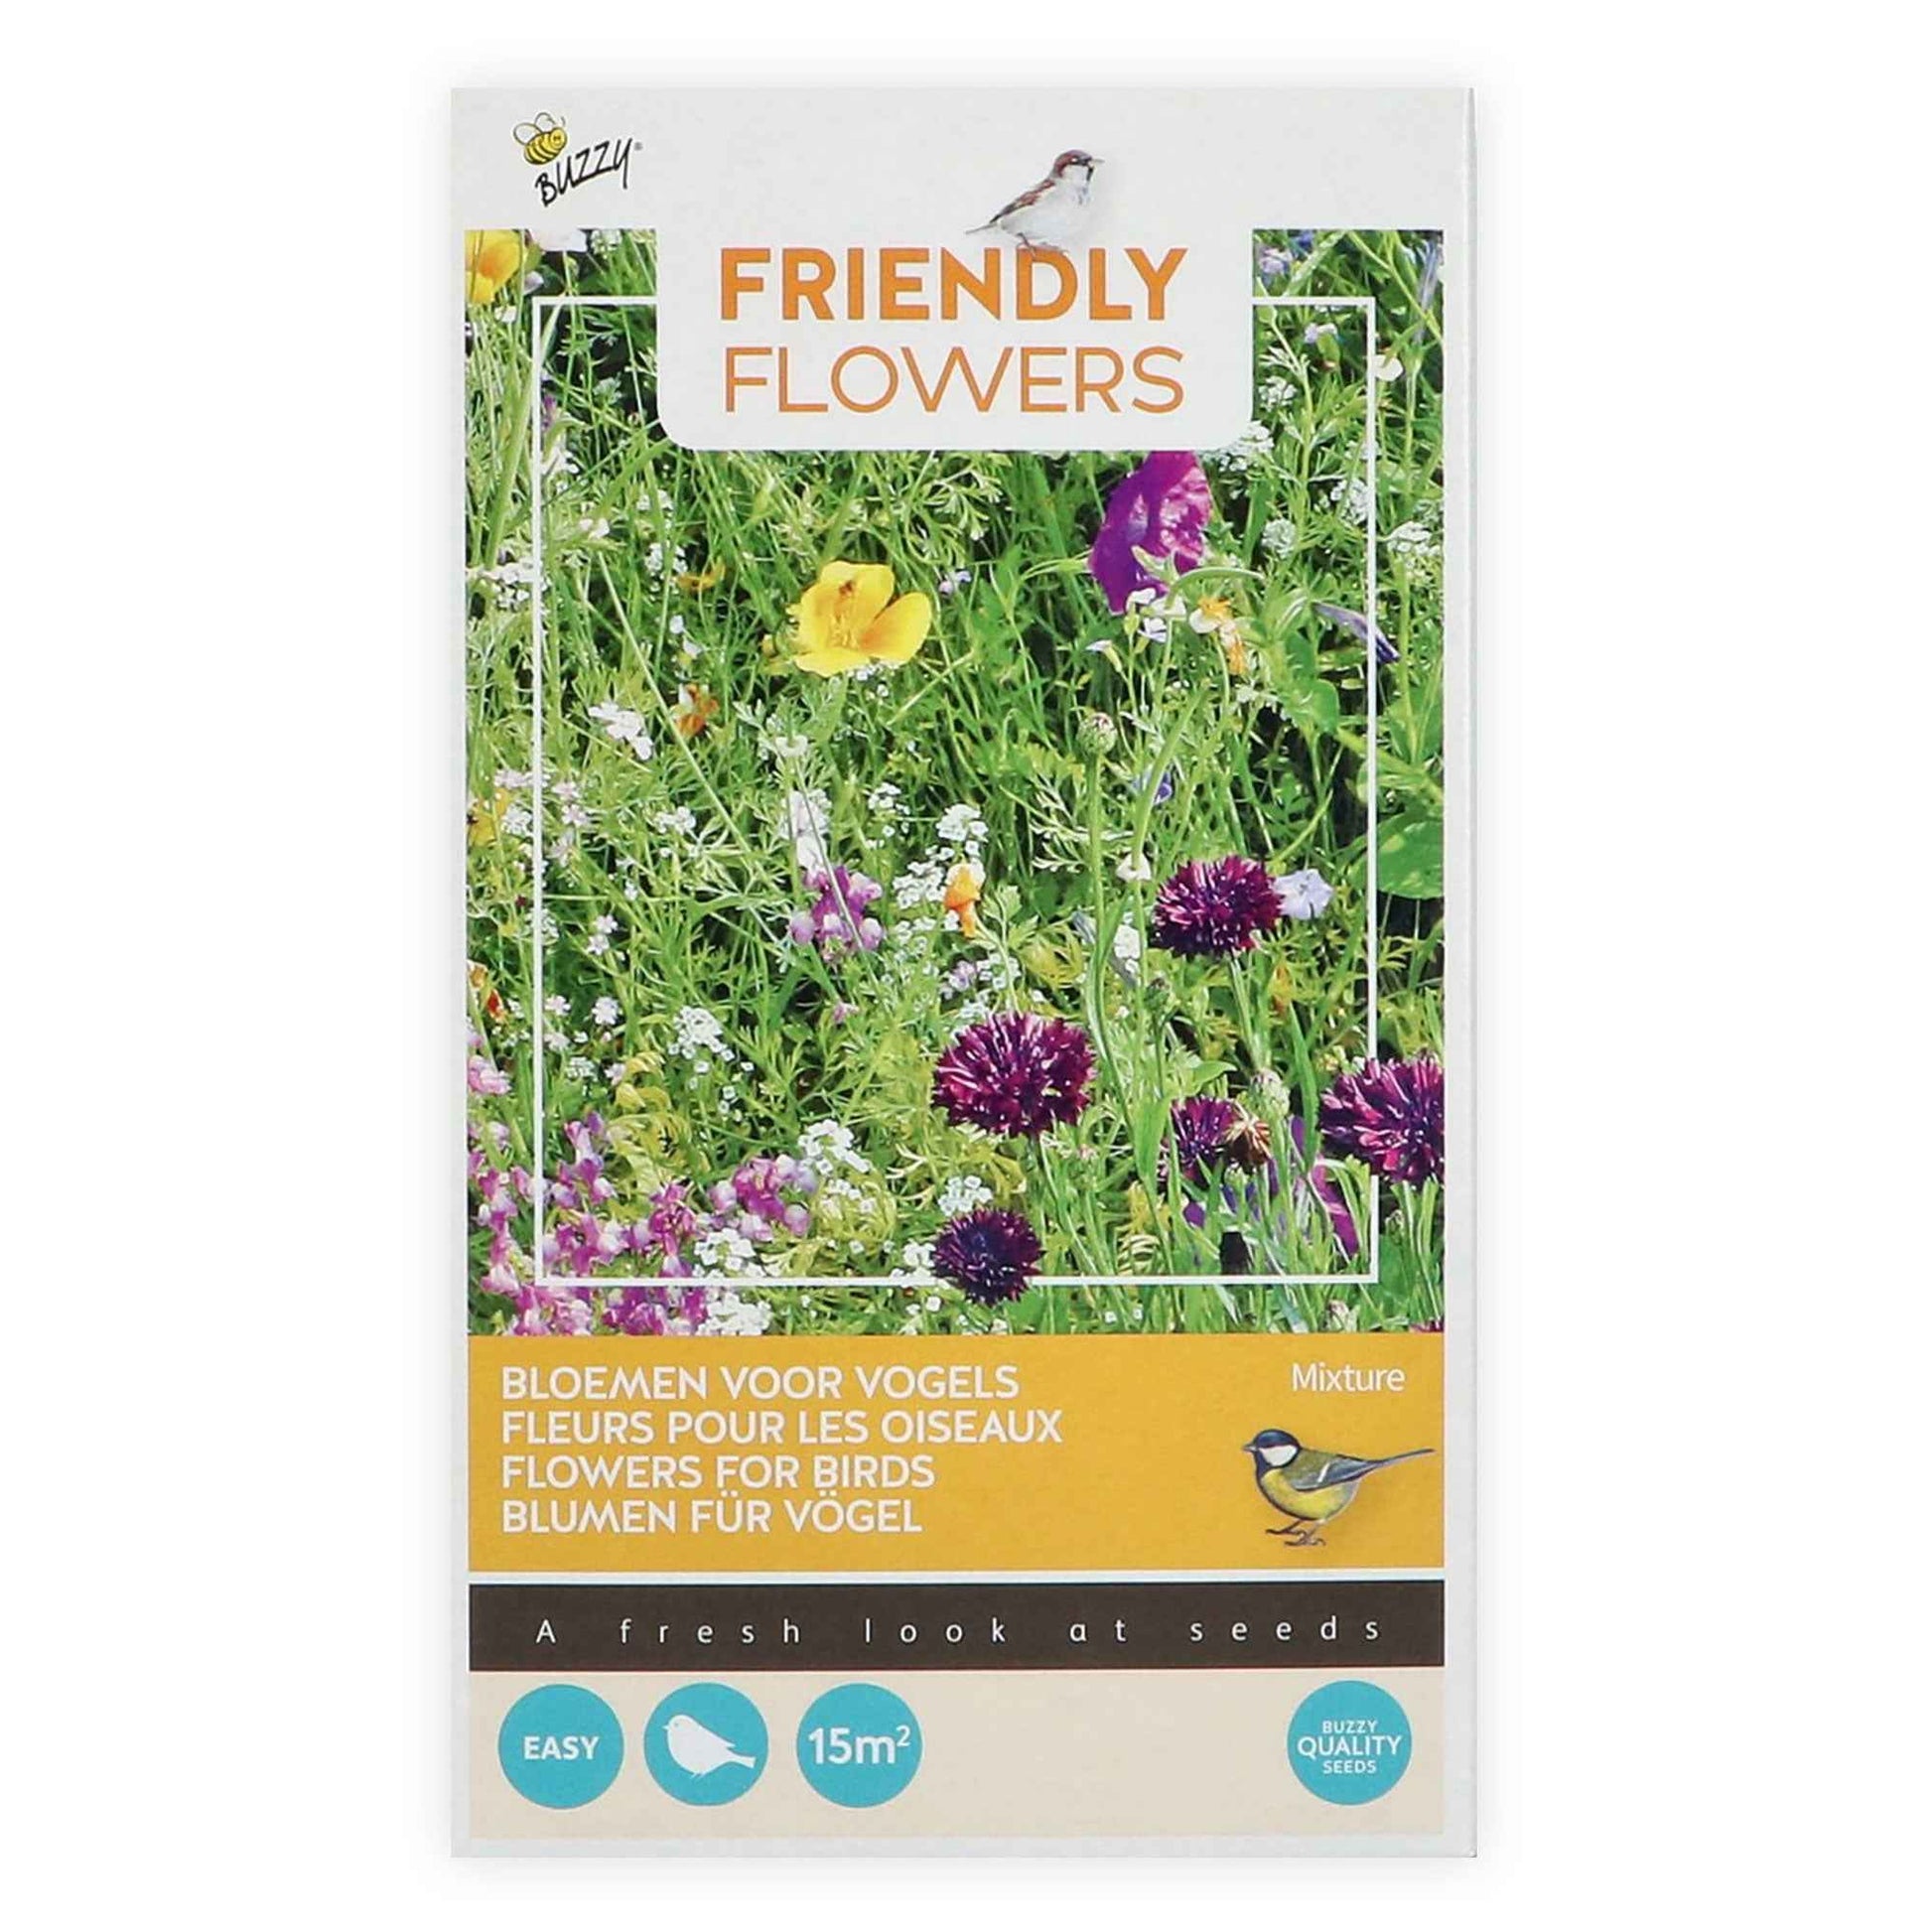 Fleurs qui attirent les oiseaux - Friendly Flowers Mélange incl. granulat - Semences de fleurs - Caractéristiques des plantes